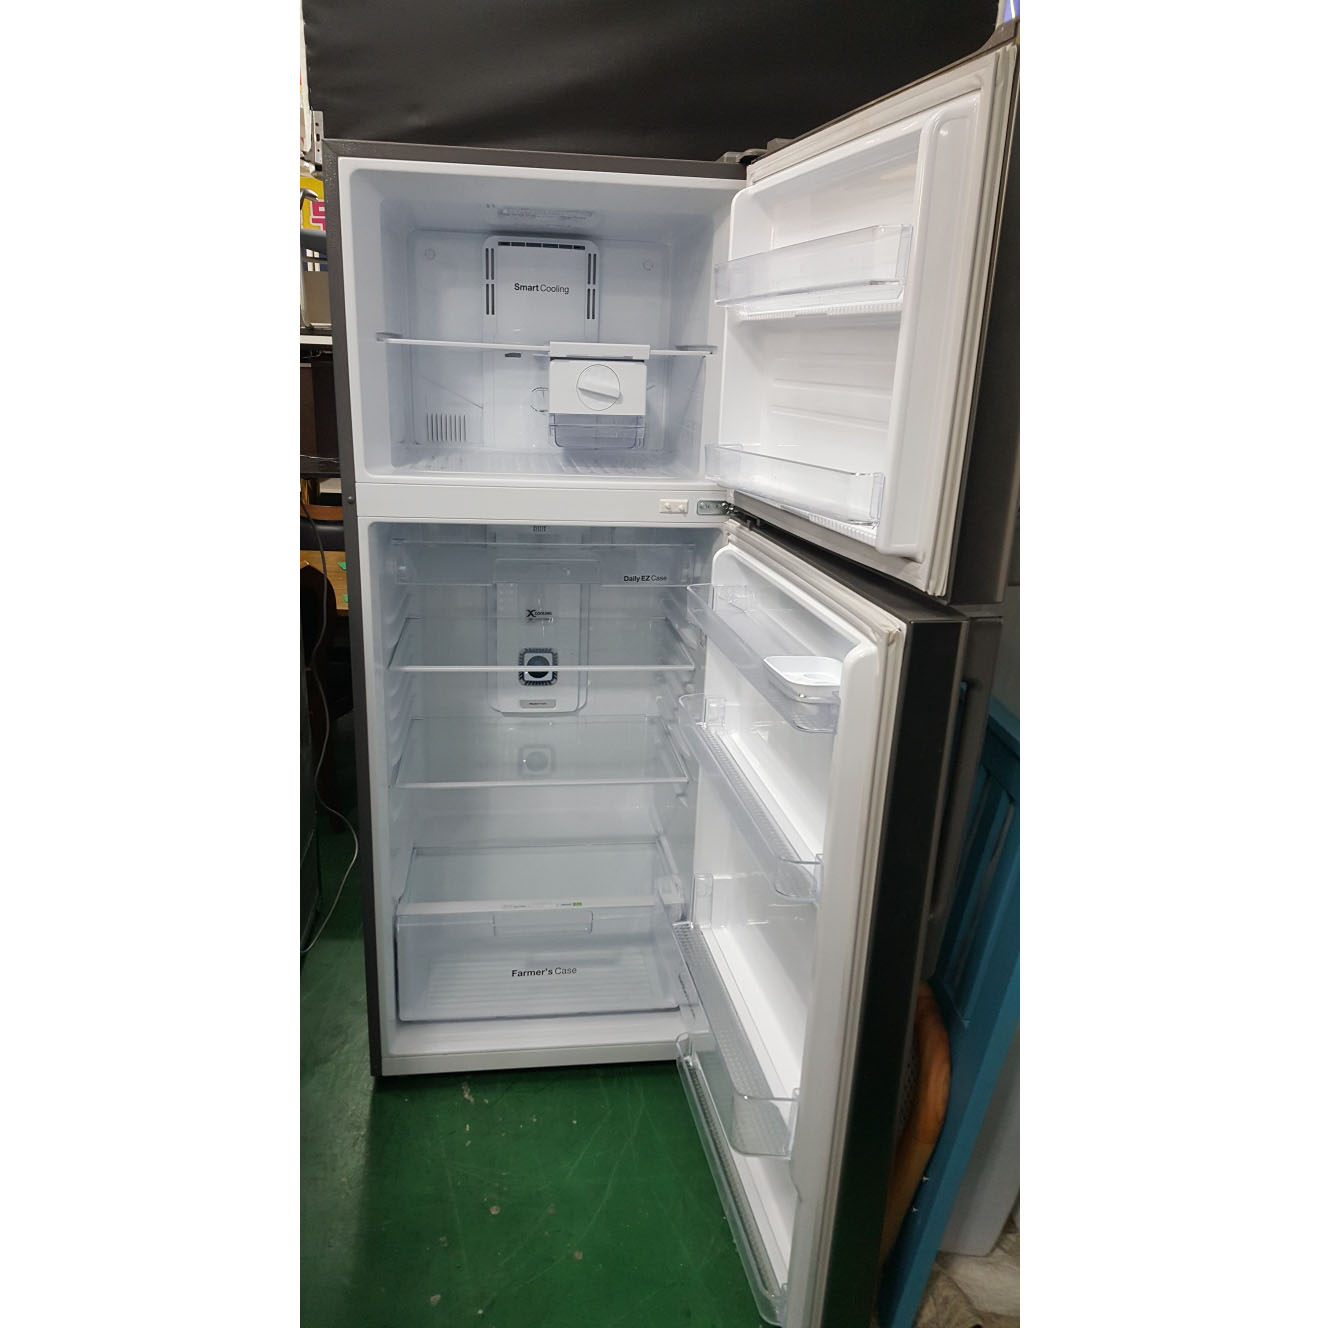 냉장고 506L